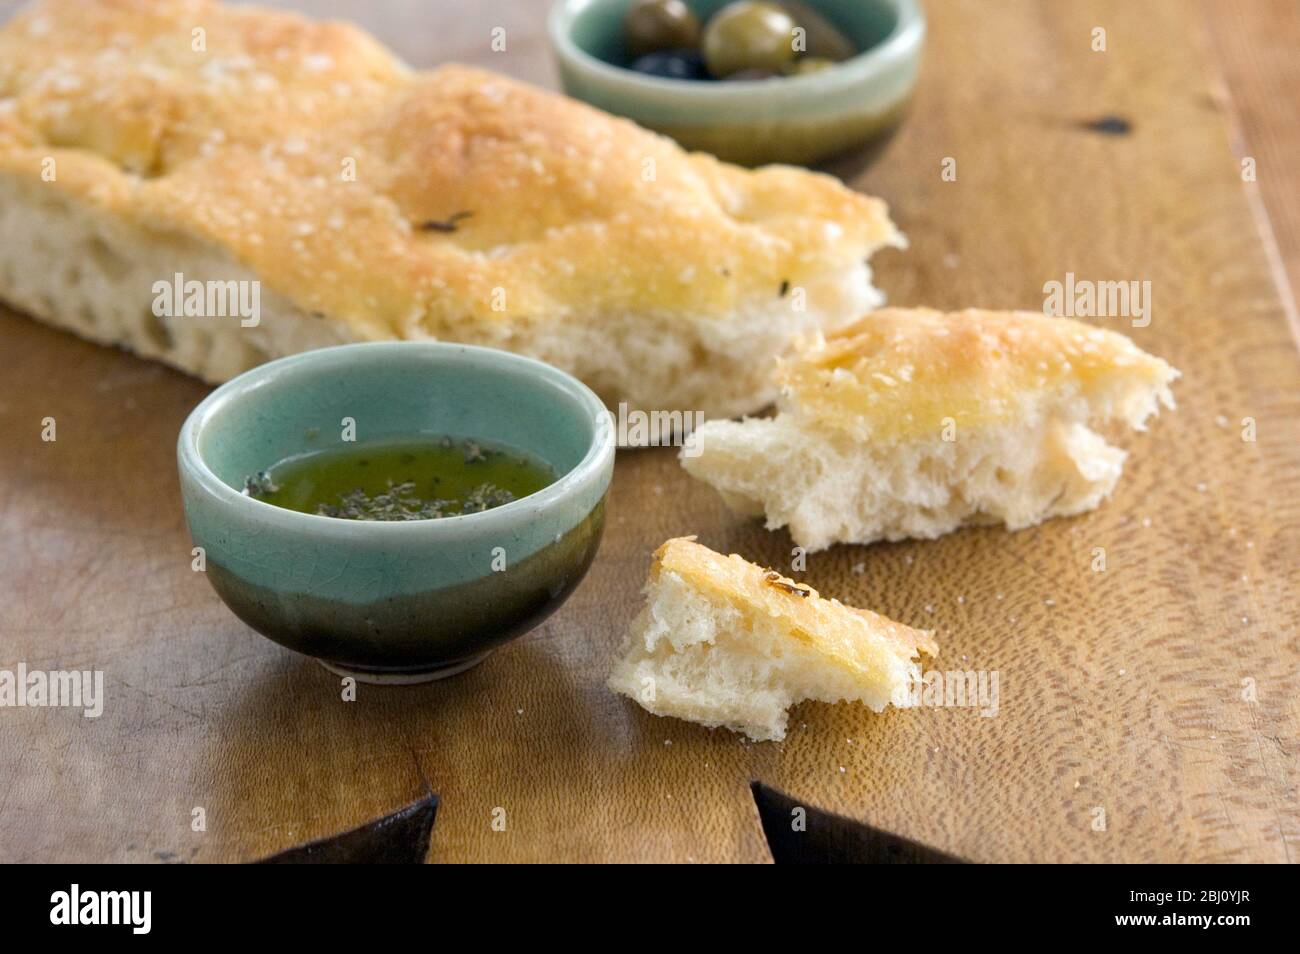 Olivenöl und Rosmarin Foccaccia Brot auf Holzbrett mit kleinen Schüsseln von einkerkerntem Olivenöl und ganze Oliven - Stockfoto